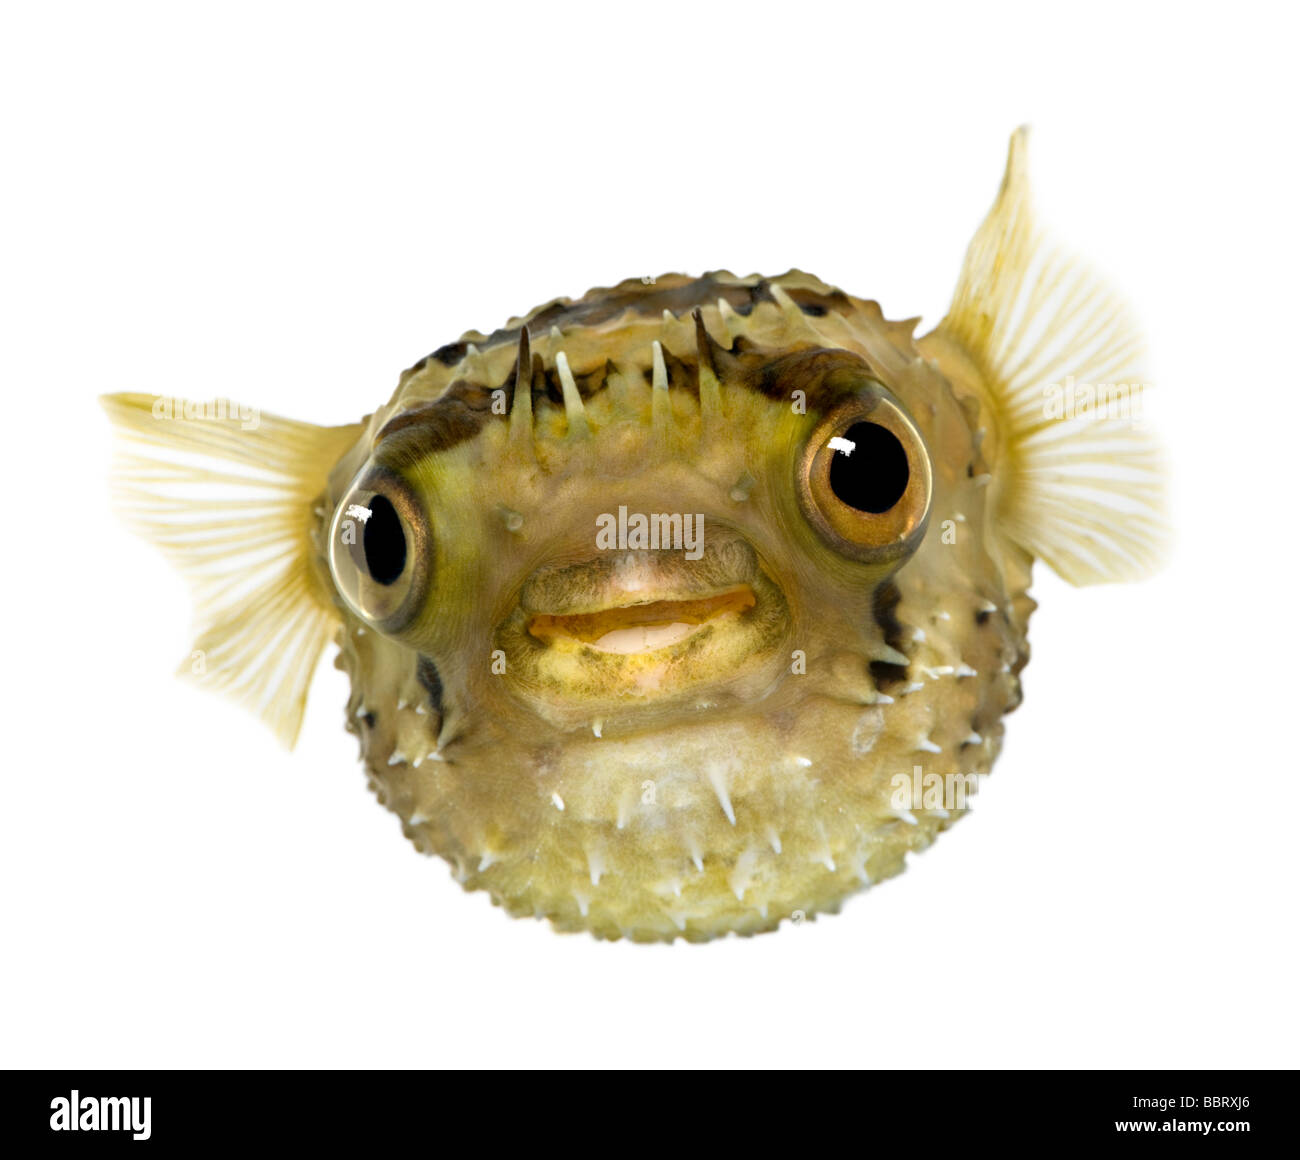 Allungate la spina dorsale porcupinefish anche sapere come balloonfish spinoso Diodon holocanthus davanti a uno sfondo bianco Foto Stock